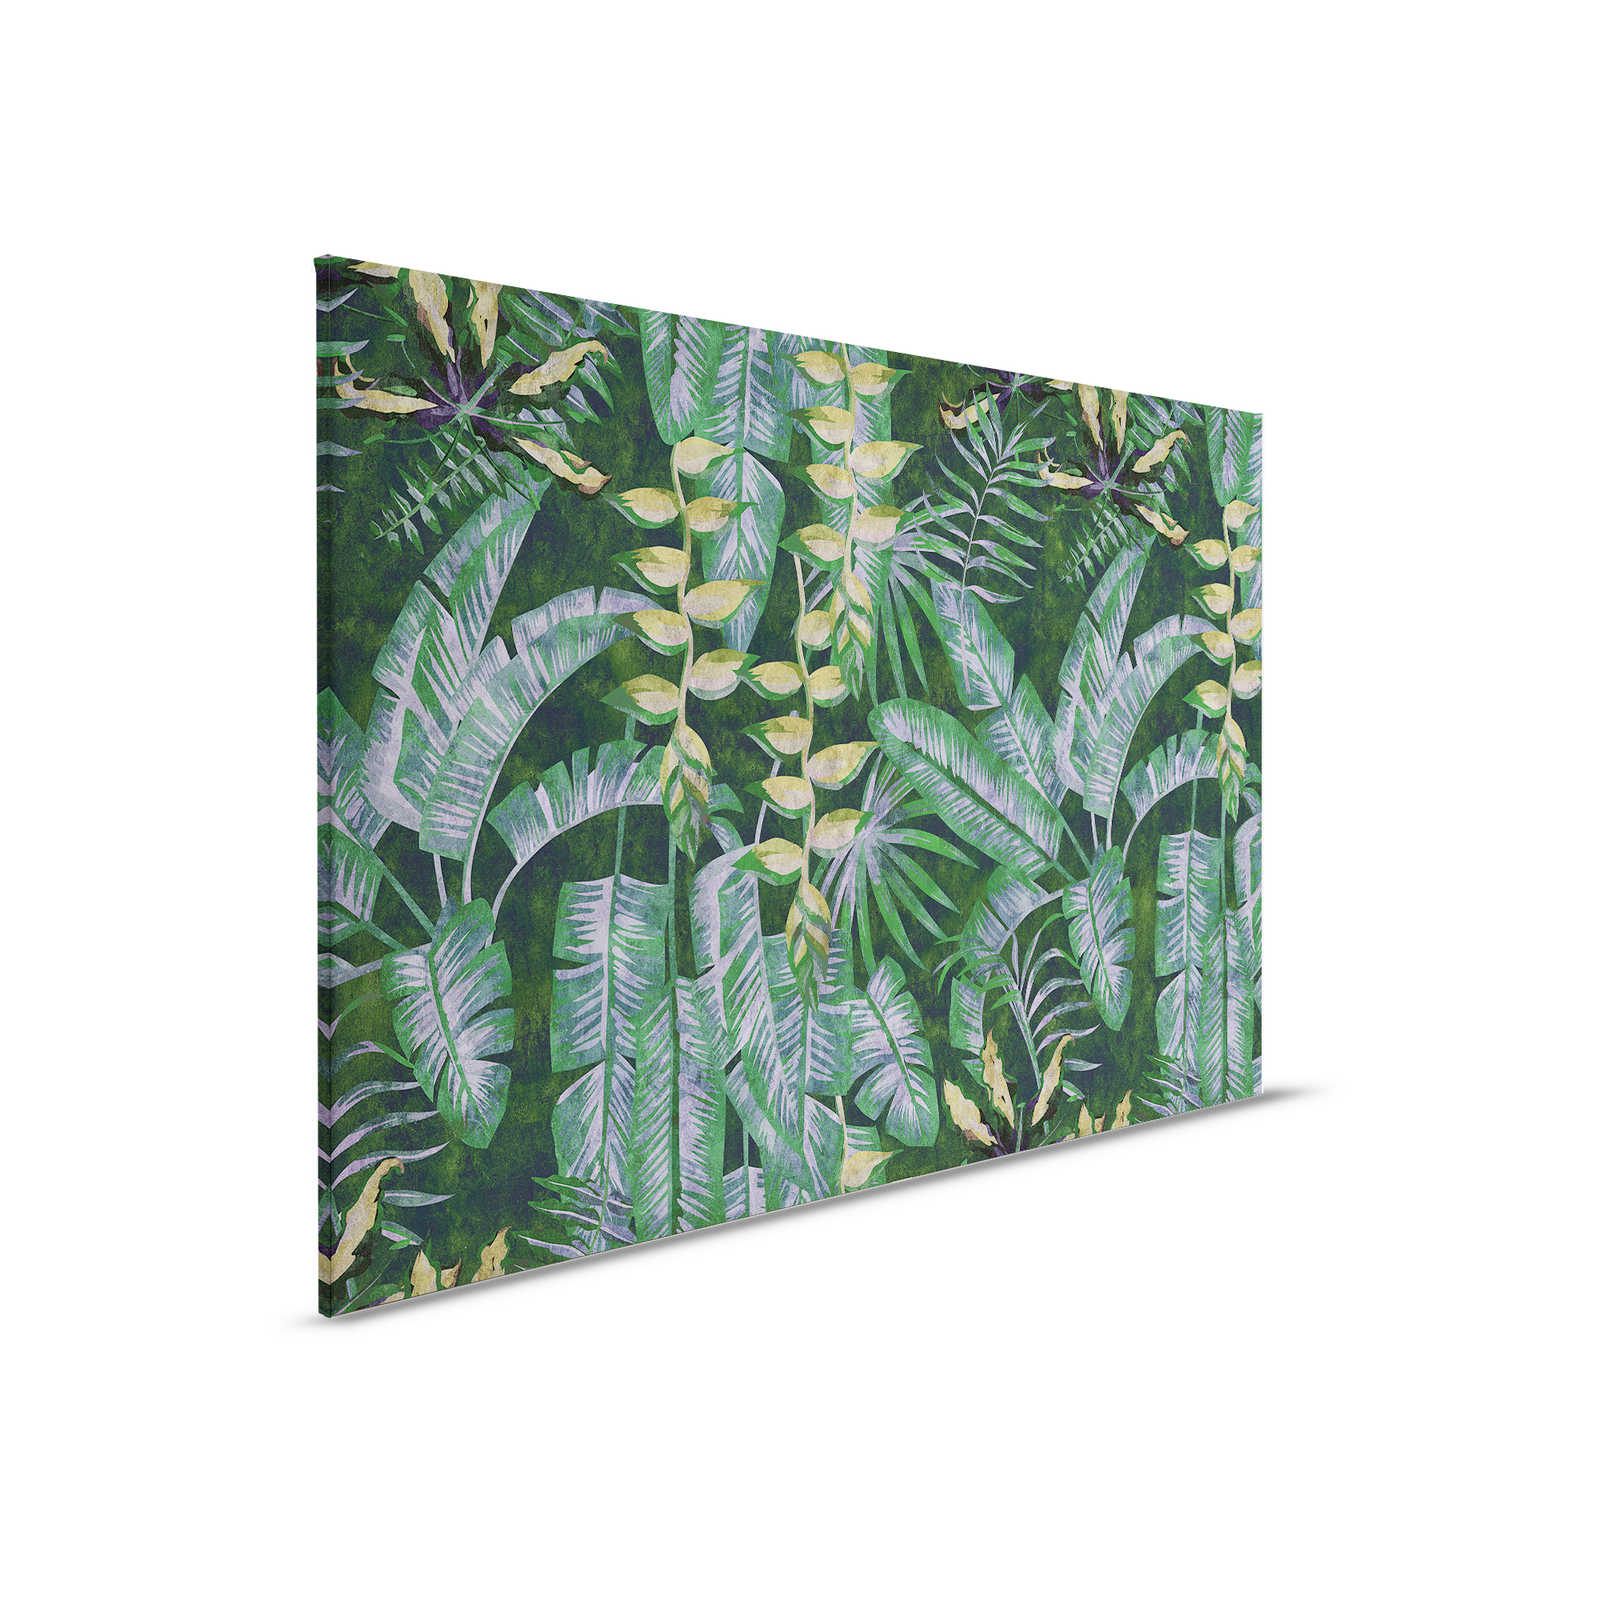 Tropicana 2 - Quadro su tela con piante tropicali - 0,90 m x 0,60 m
